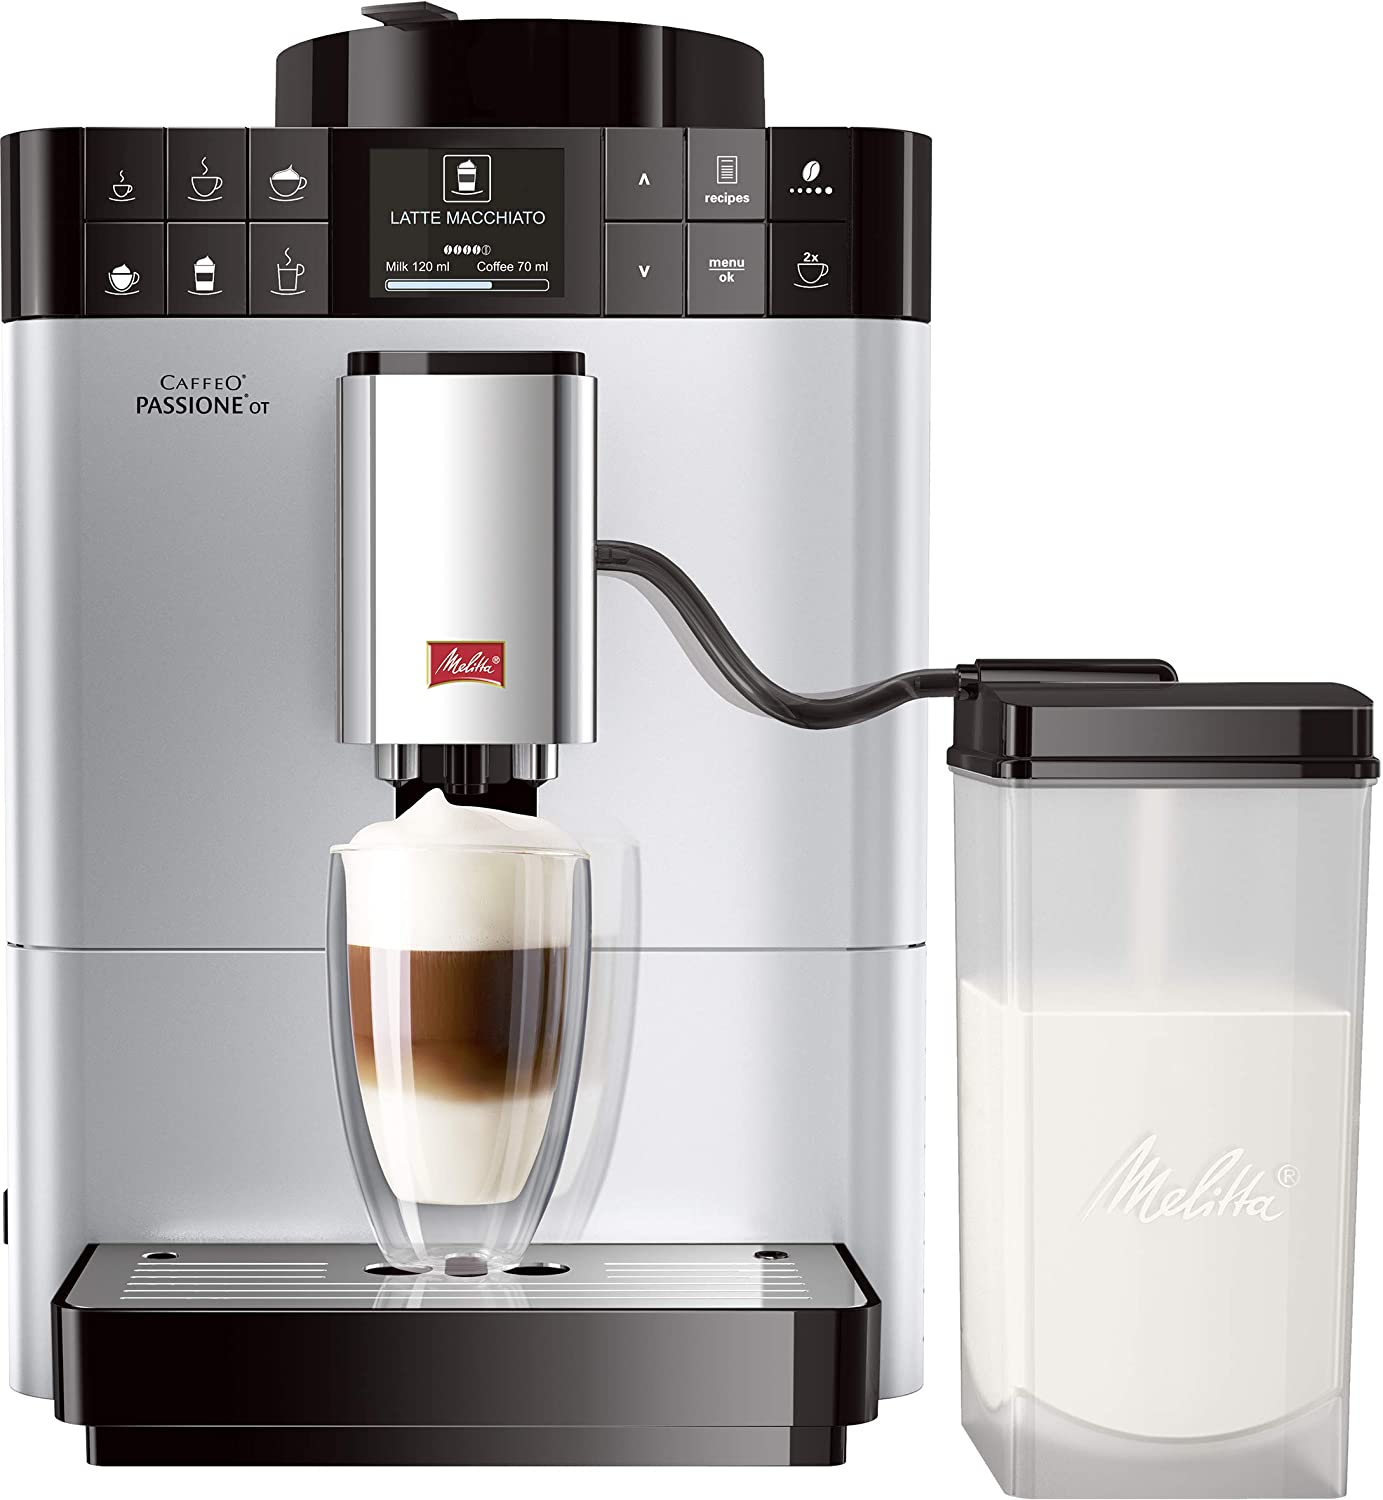 Melitta F53/1-101 Passione OT, Fully Automatic Coffee Machine - Silver